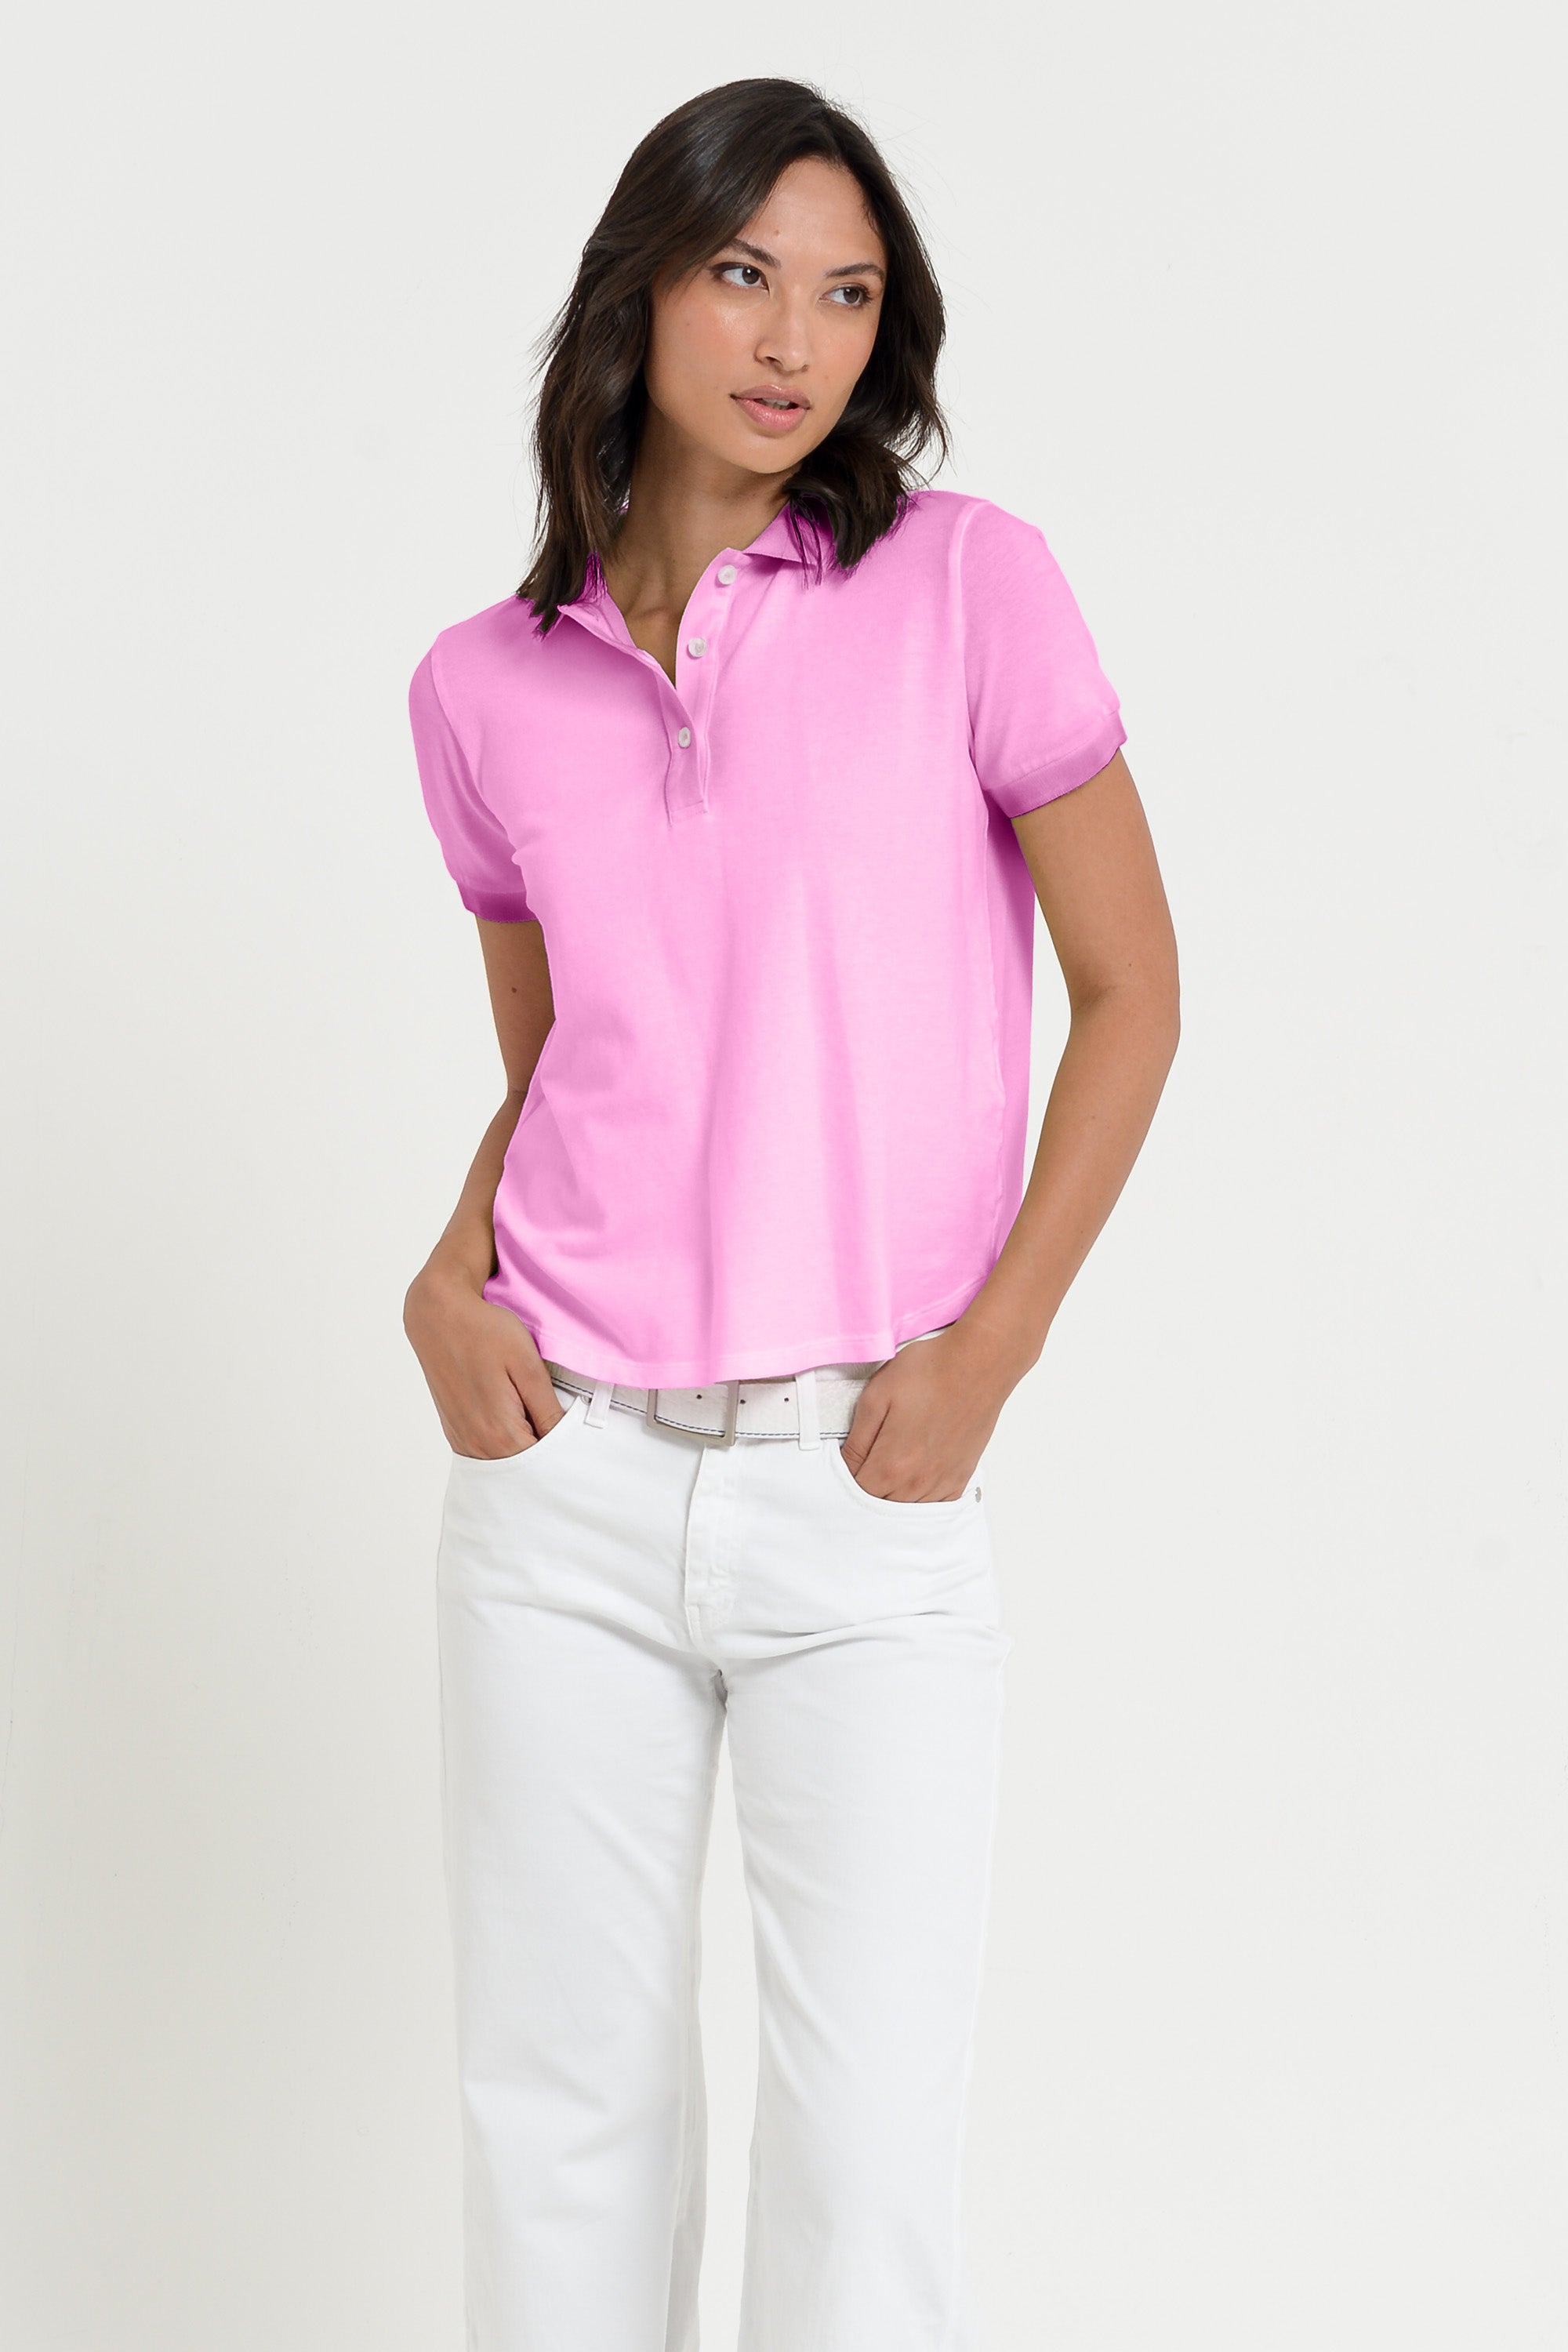 Crystal Polo - Women's Pique Polo Shirt - Candy